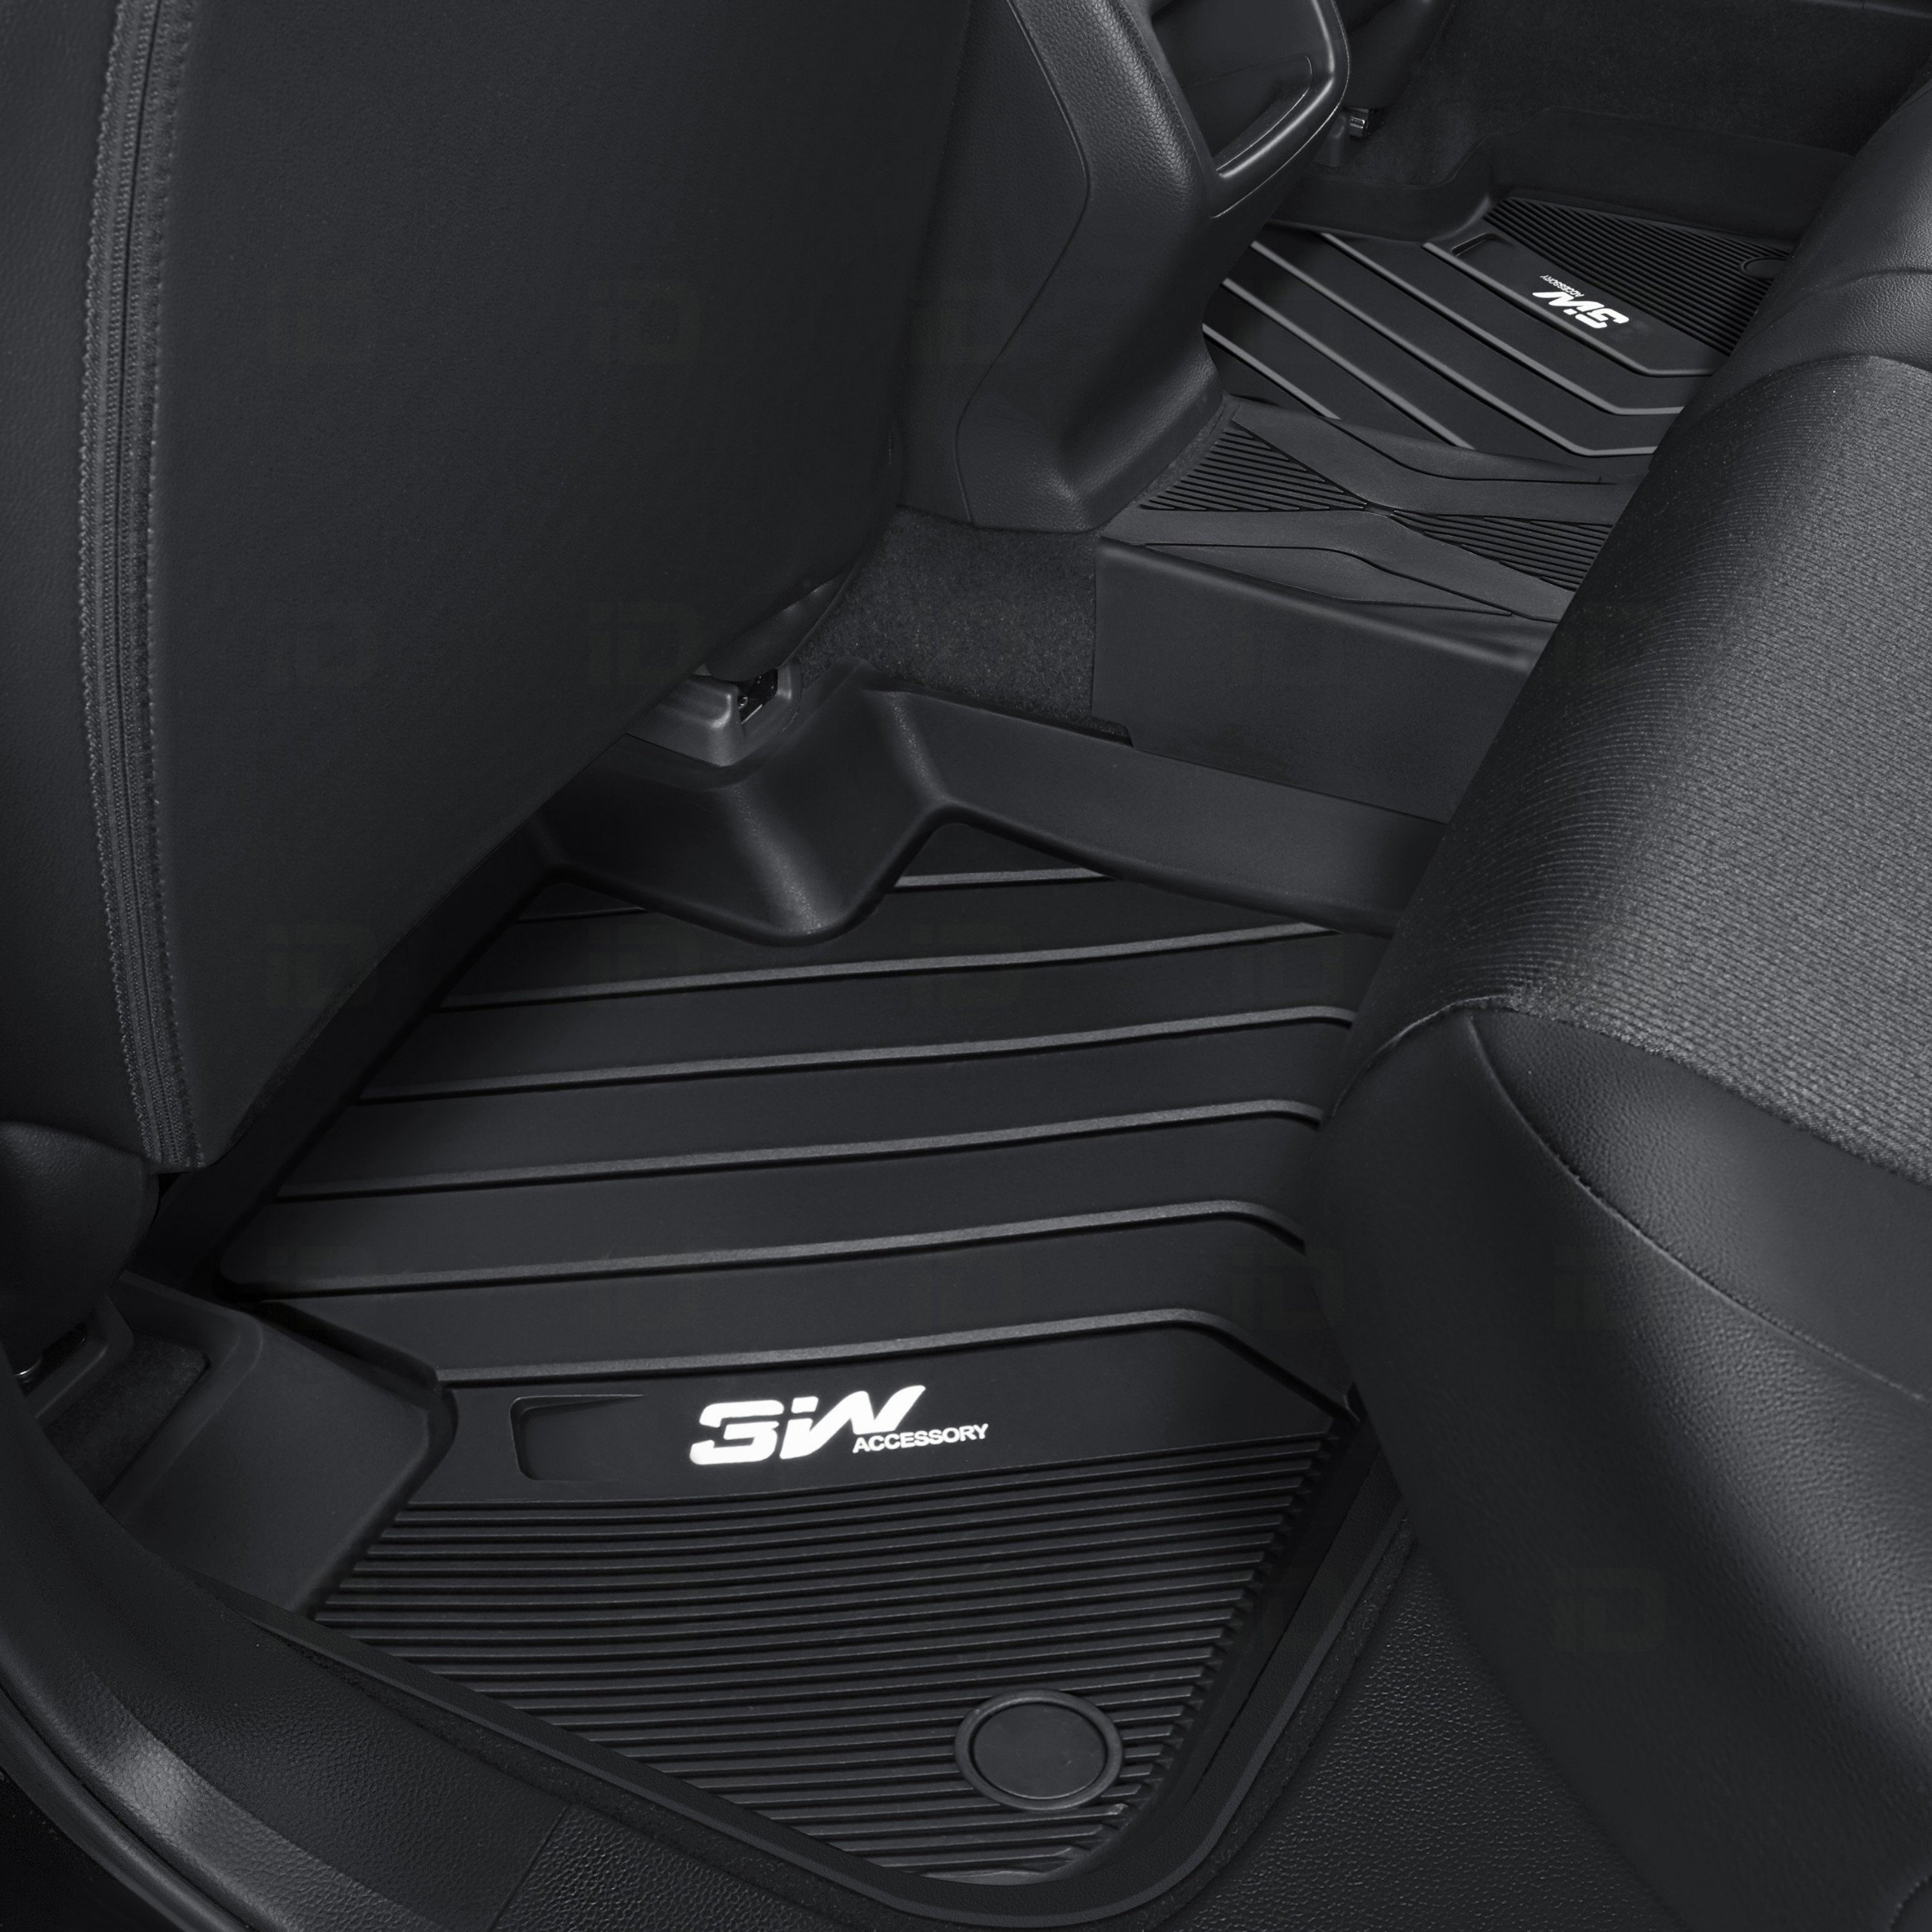 Thảm lót sàn xe ô tô BMW New X6 2019-đến nay nhãn hiệu Macsim 3W - chất liệu nhựa TPE đúc khuôn cao cấp - màu đen